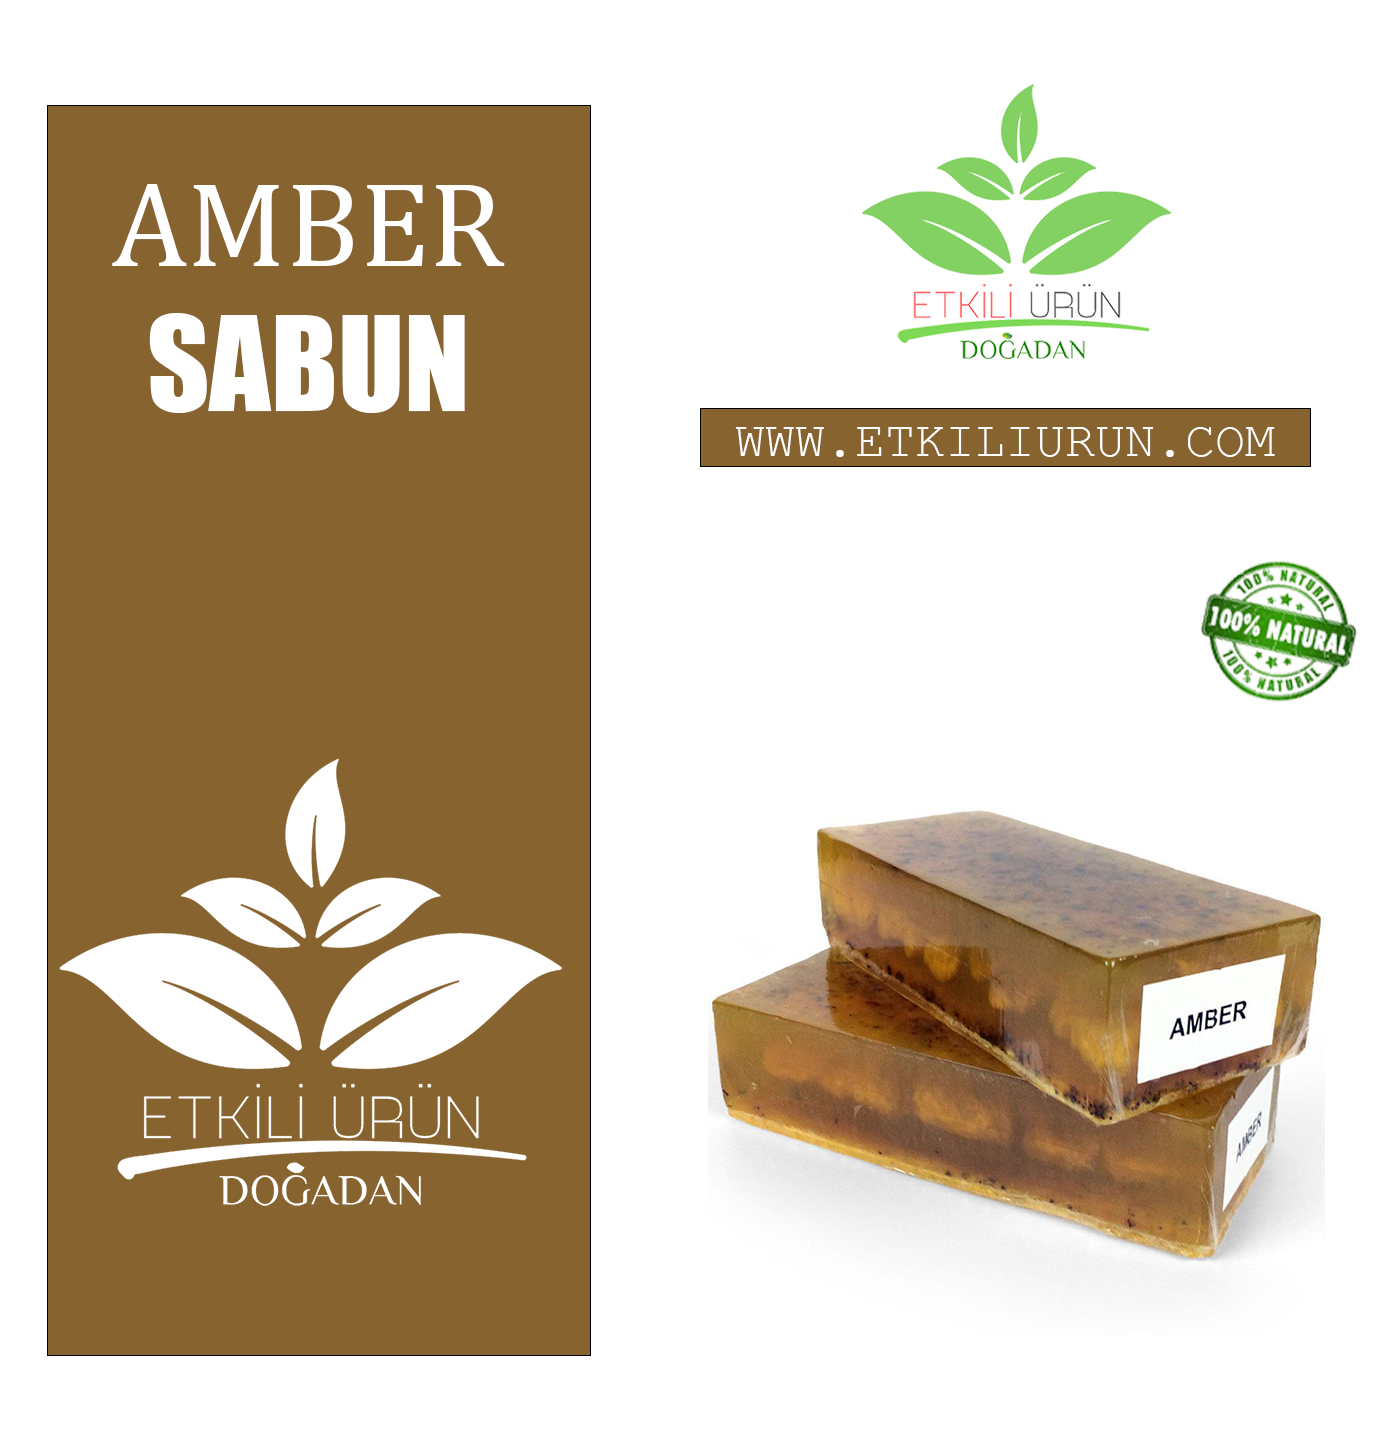 Sağlıklı ve Doğal Amber Sabun - En İyi Doğal Amber Sabun Ürünleri EtkiliÜrün